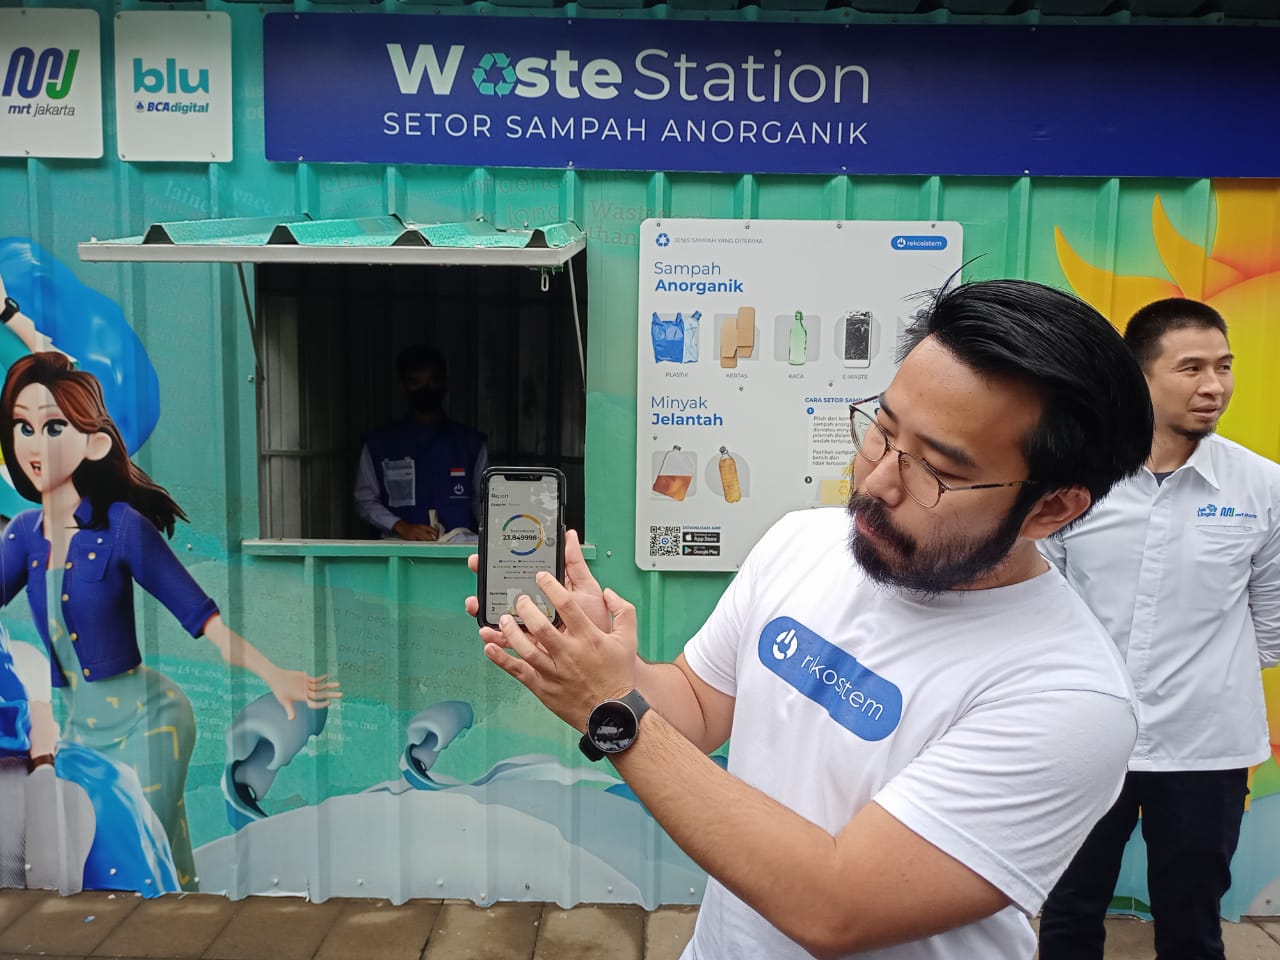 blu by BCA, Rekosistem dan MRT Jakarta, Ajak Masyarakat Setor Sampah di Waste Station